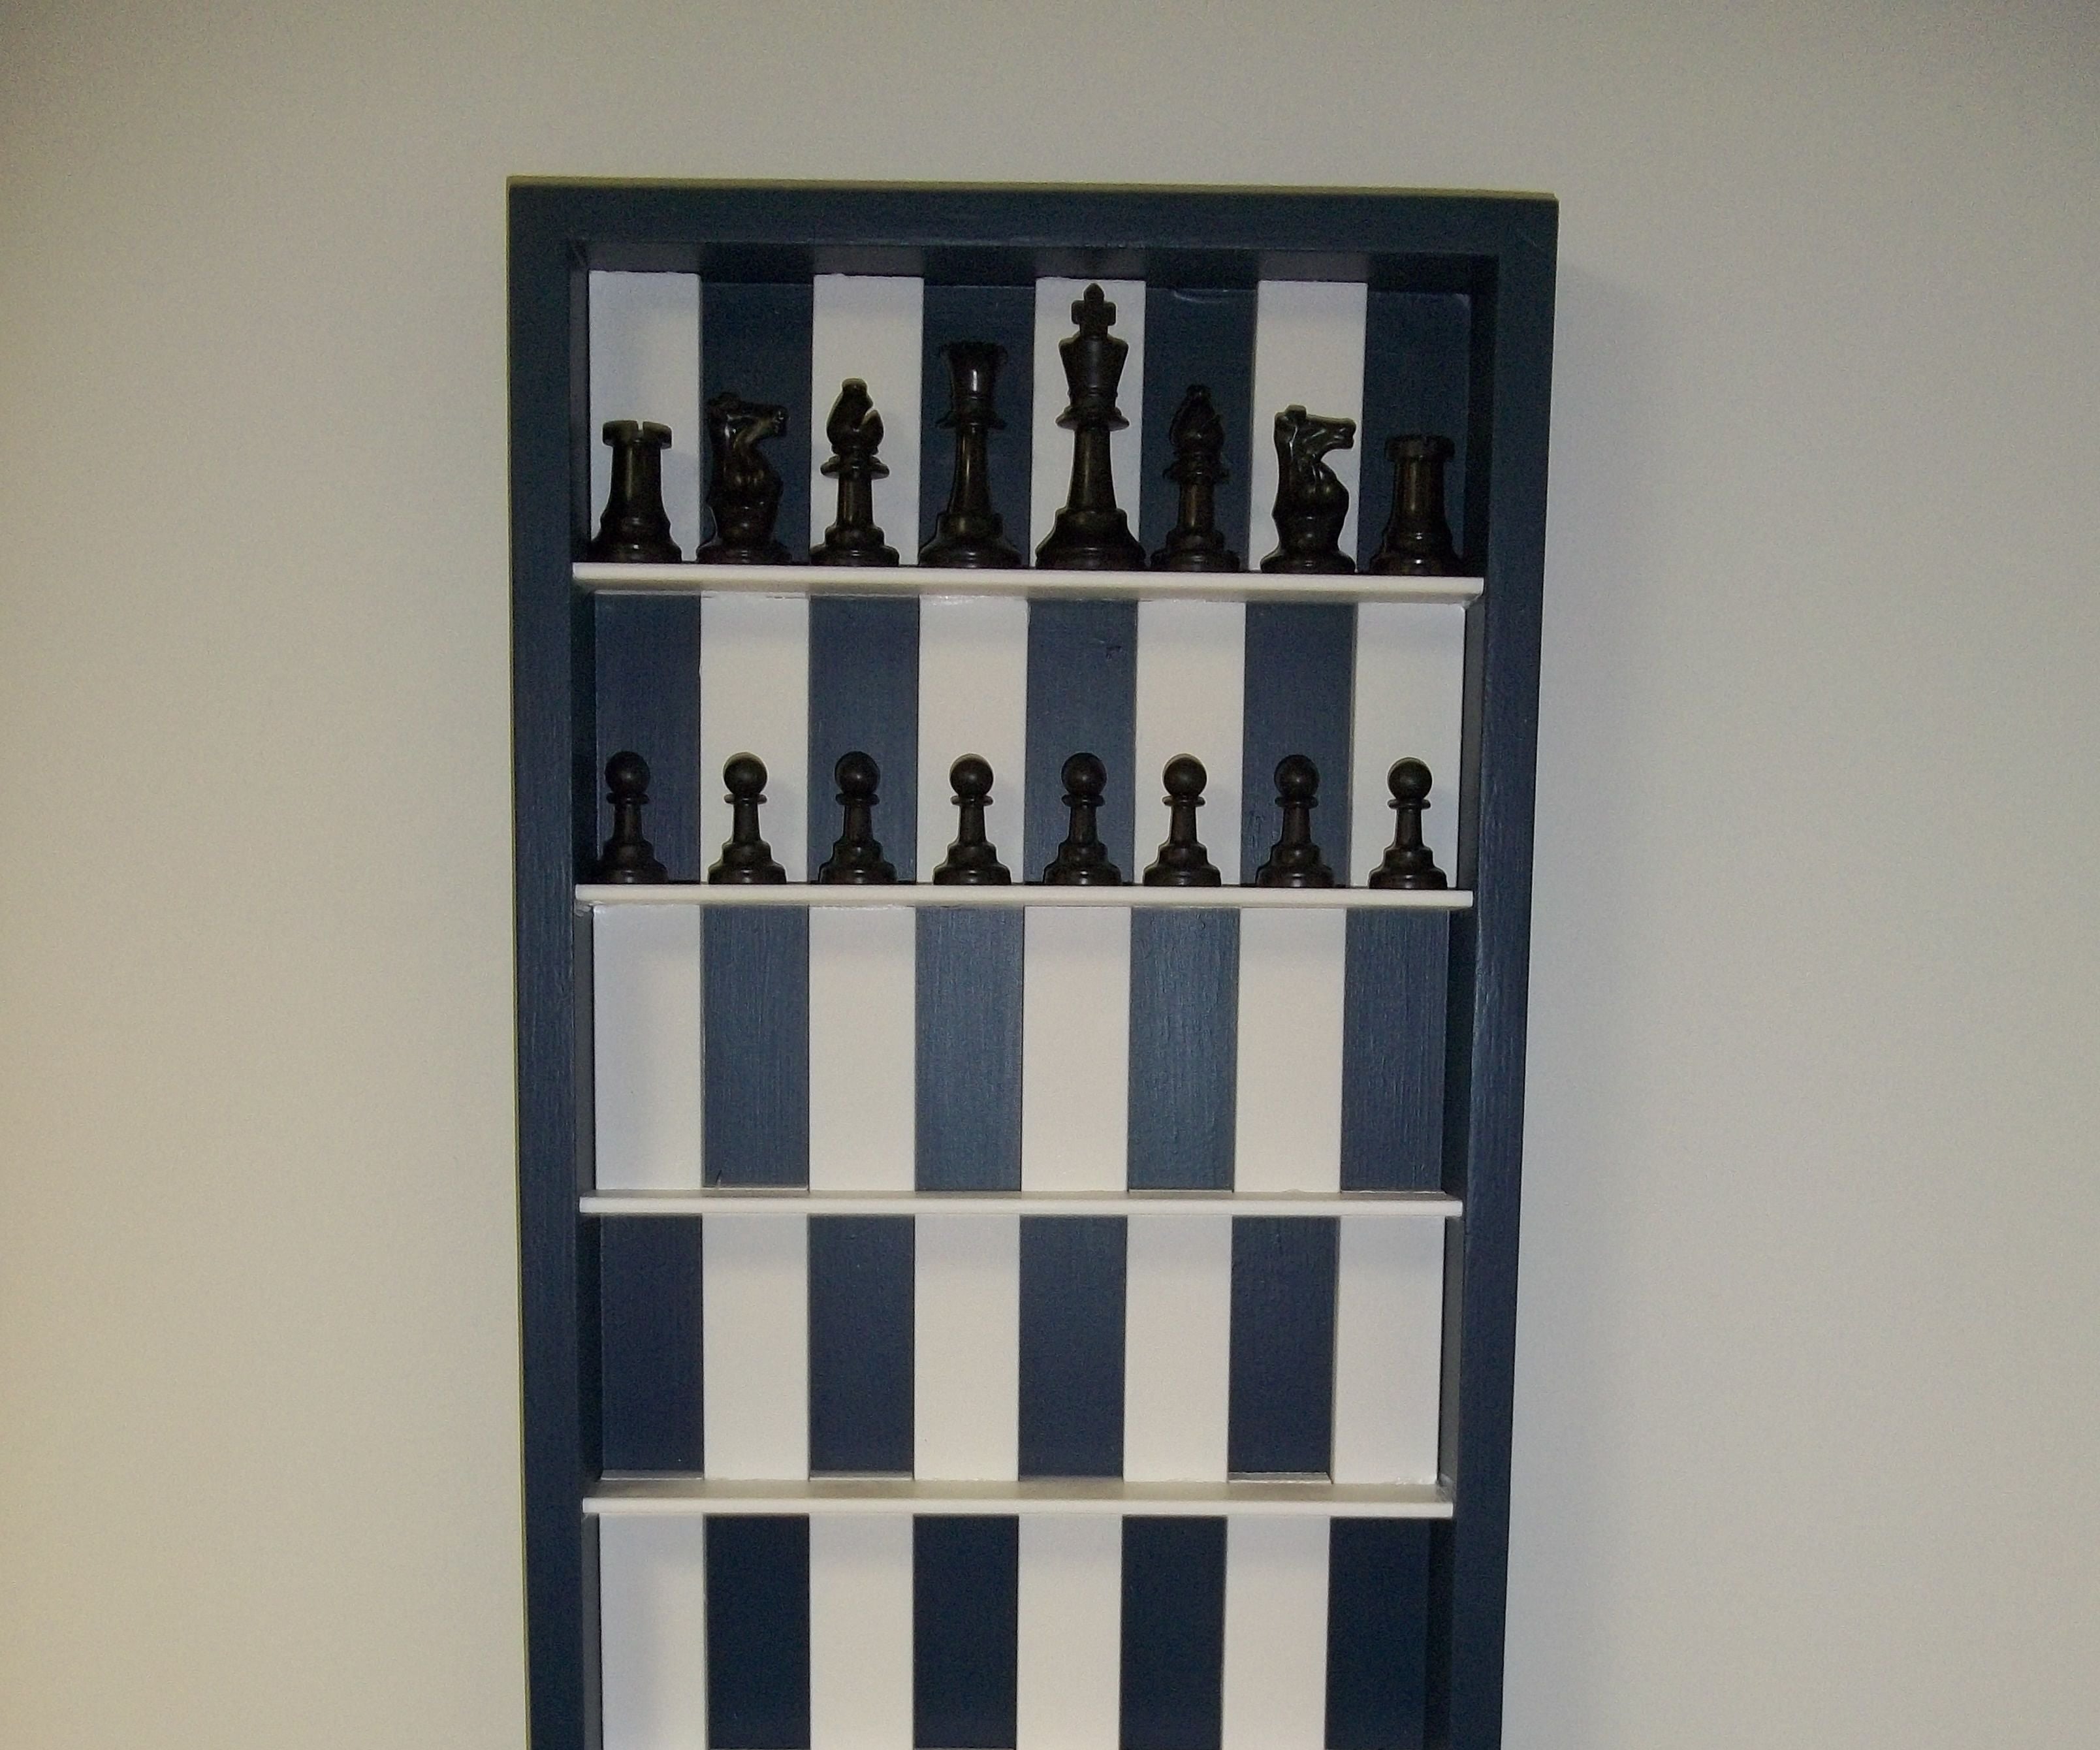 3-D Vertical Chess